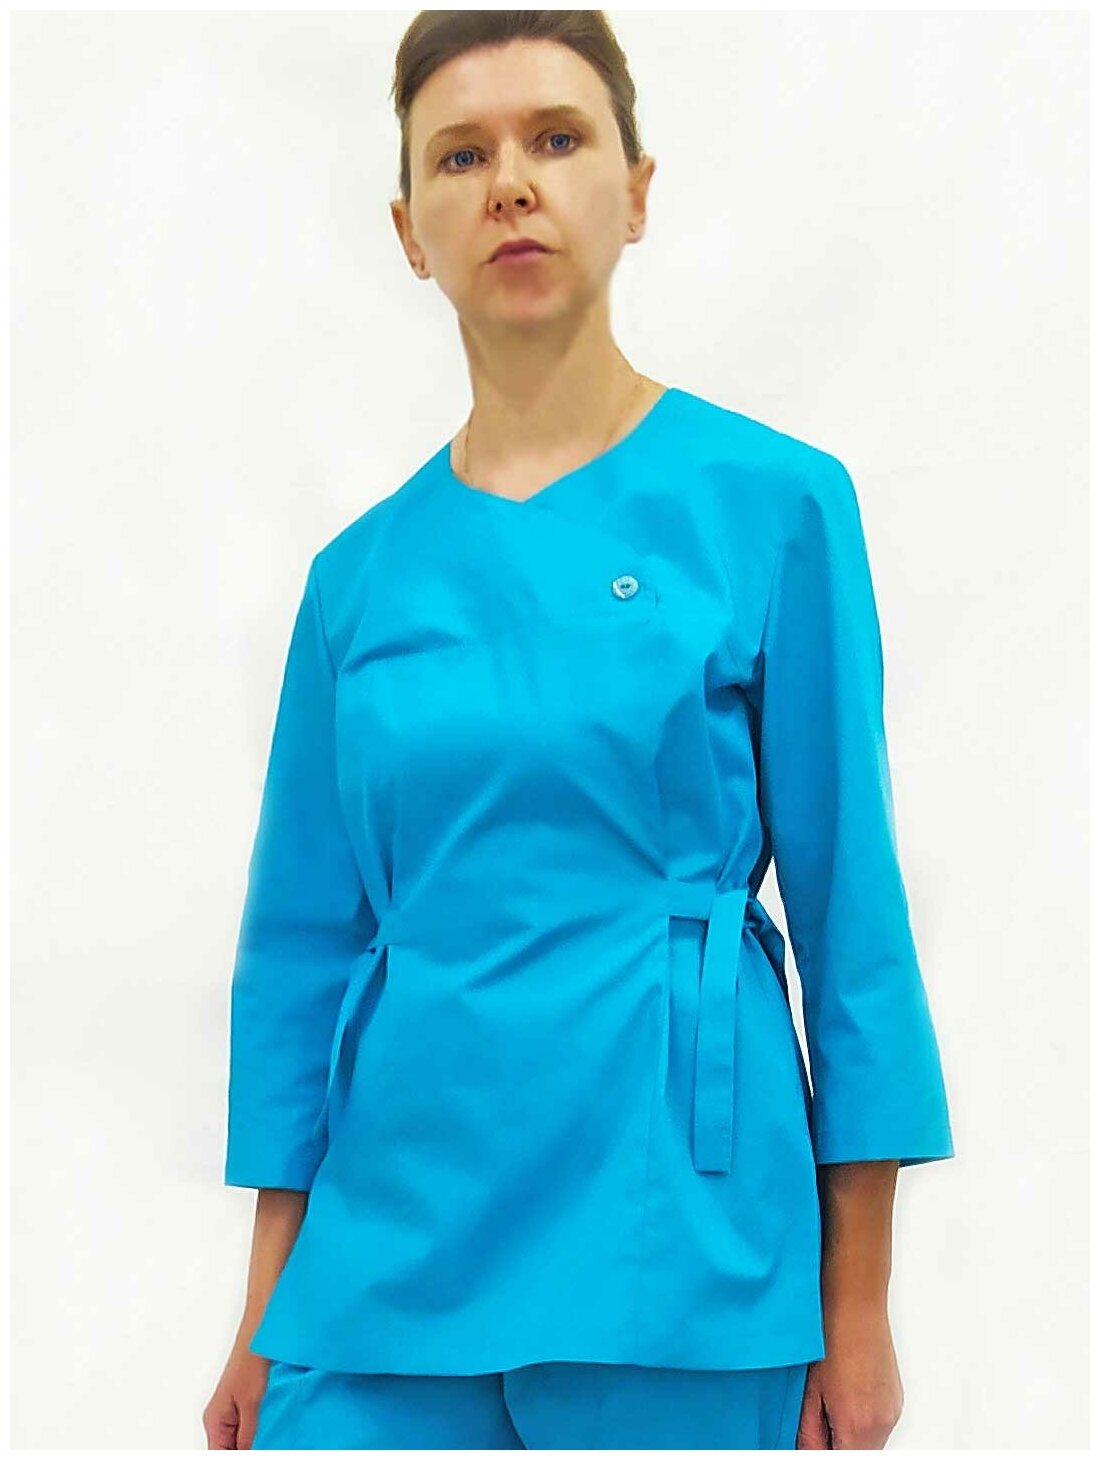 Костюм женский, производитель Фабрика швейных изделий №3, модель М-514/135, размер 42, цвет бирюза